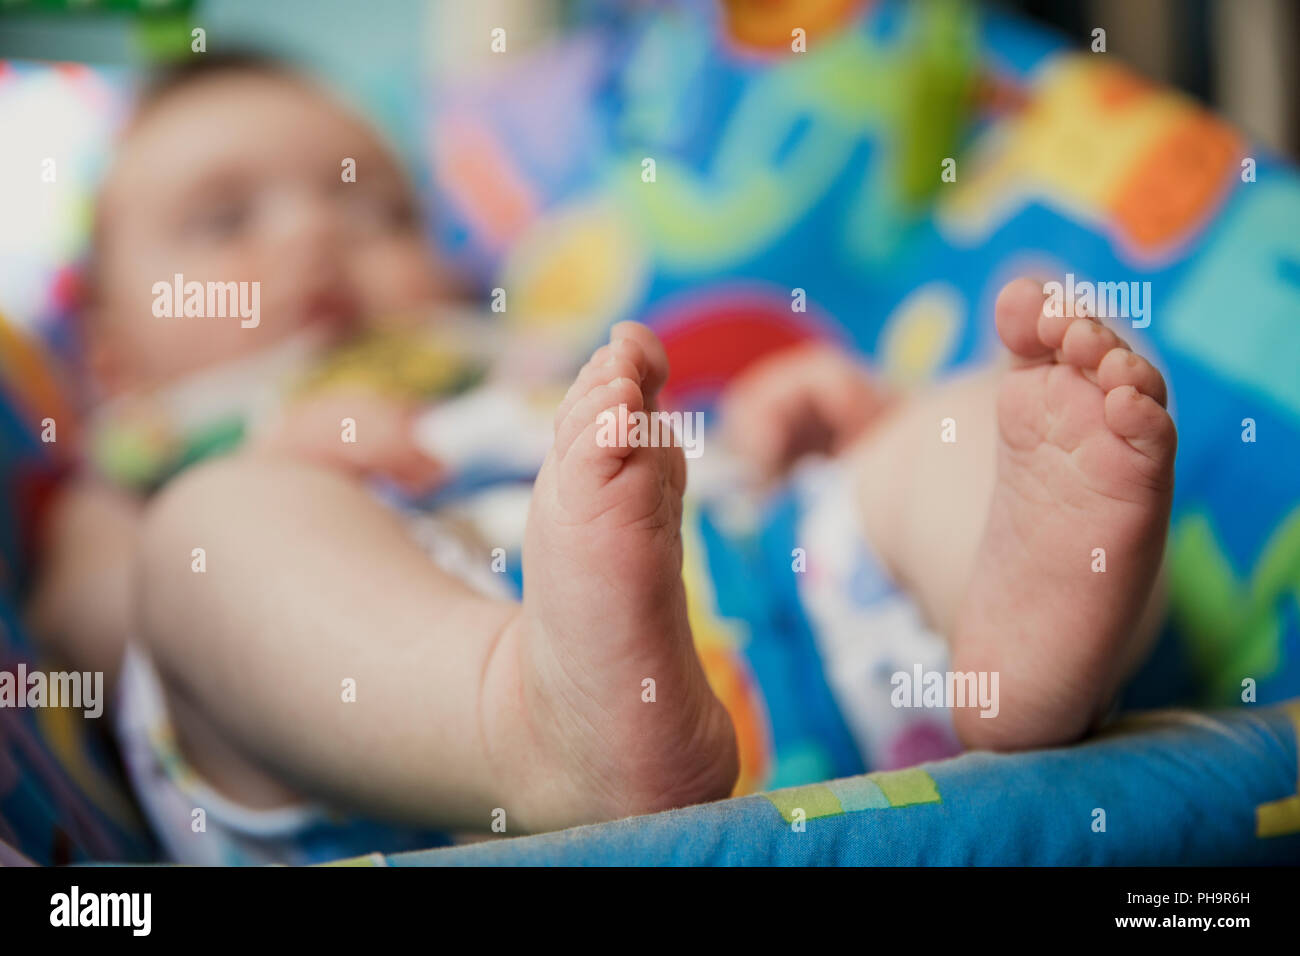 Nicht erkennbare Baby entspannen in einem Baby Bouncer. Fokus auf den Vordergrund auf der Babys Füße. Der Hintergrund des Bildes ist unscharf. Stockfoto